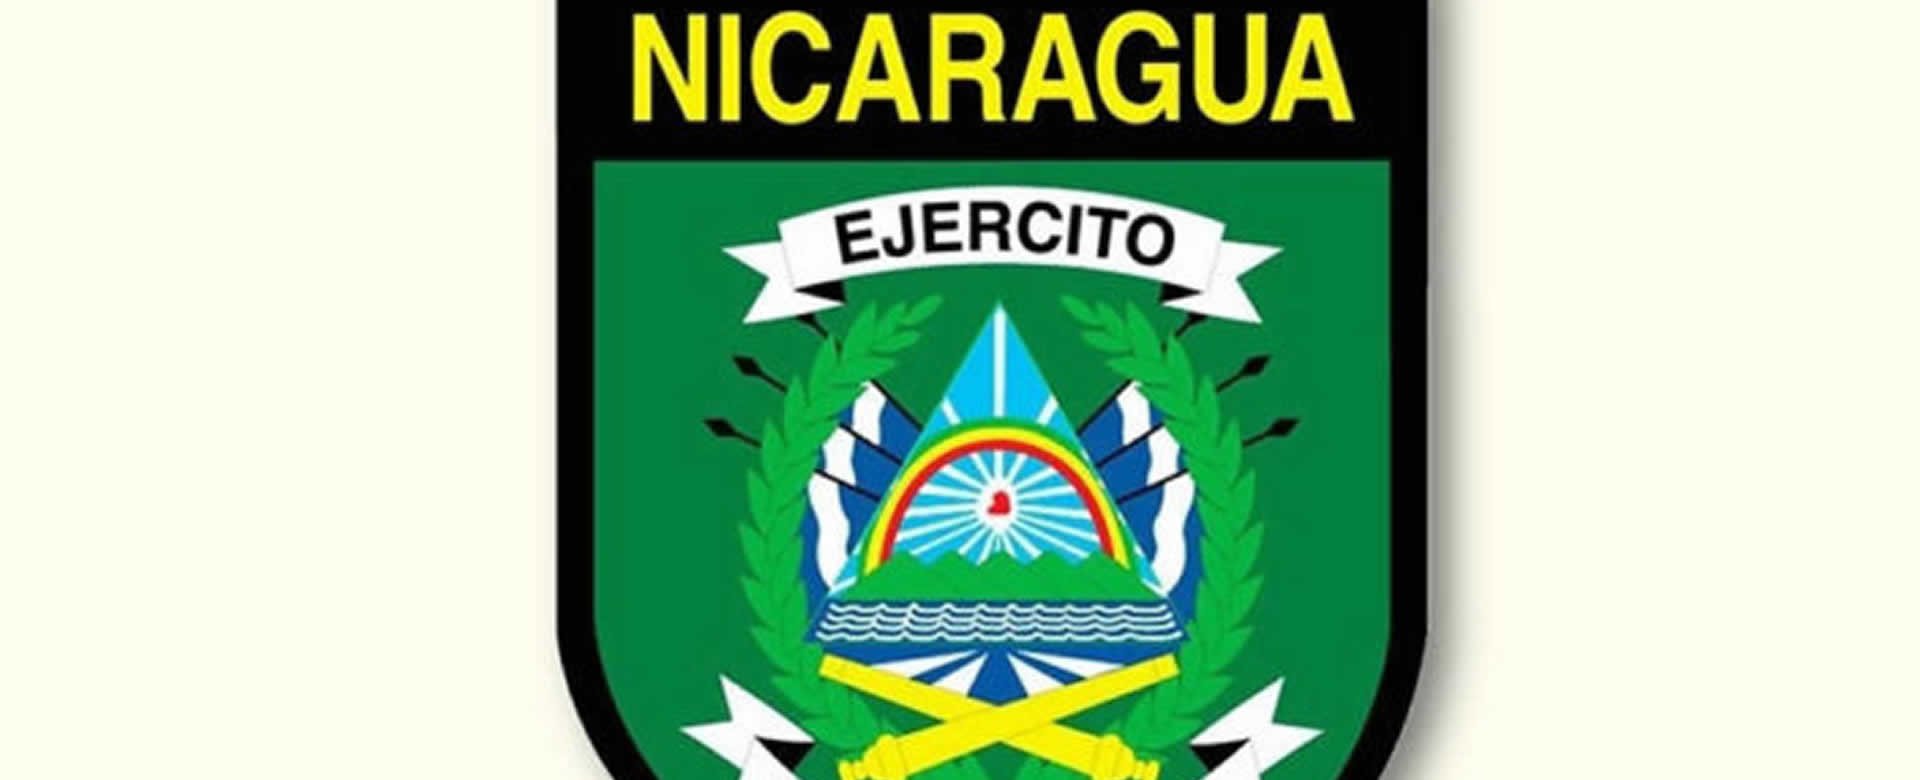 Ejército de Nicaragua realizarán prácticas con efectivos militares y técnica en Managua